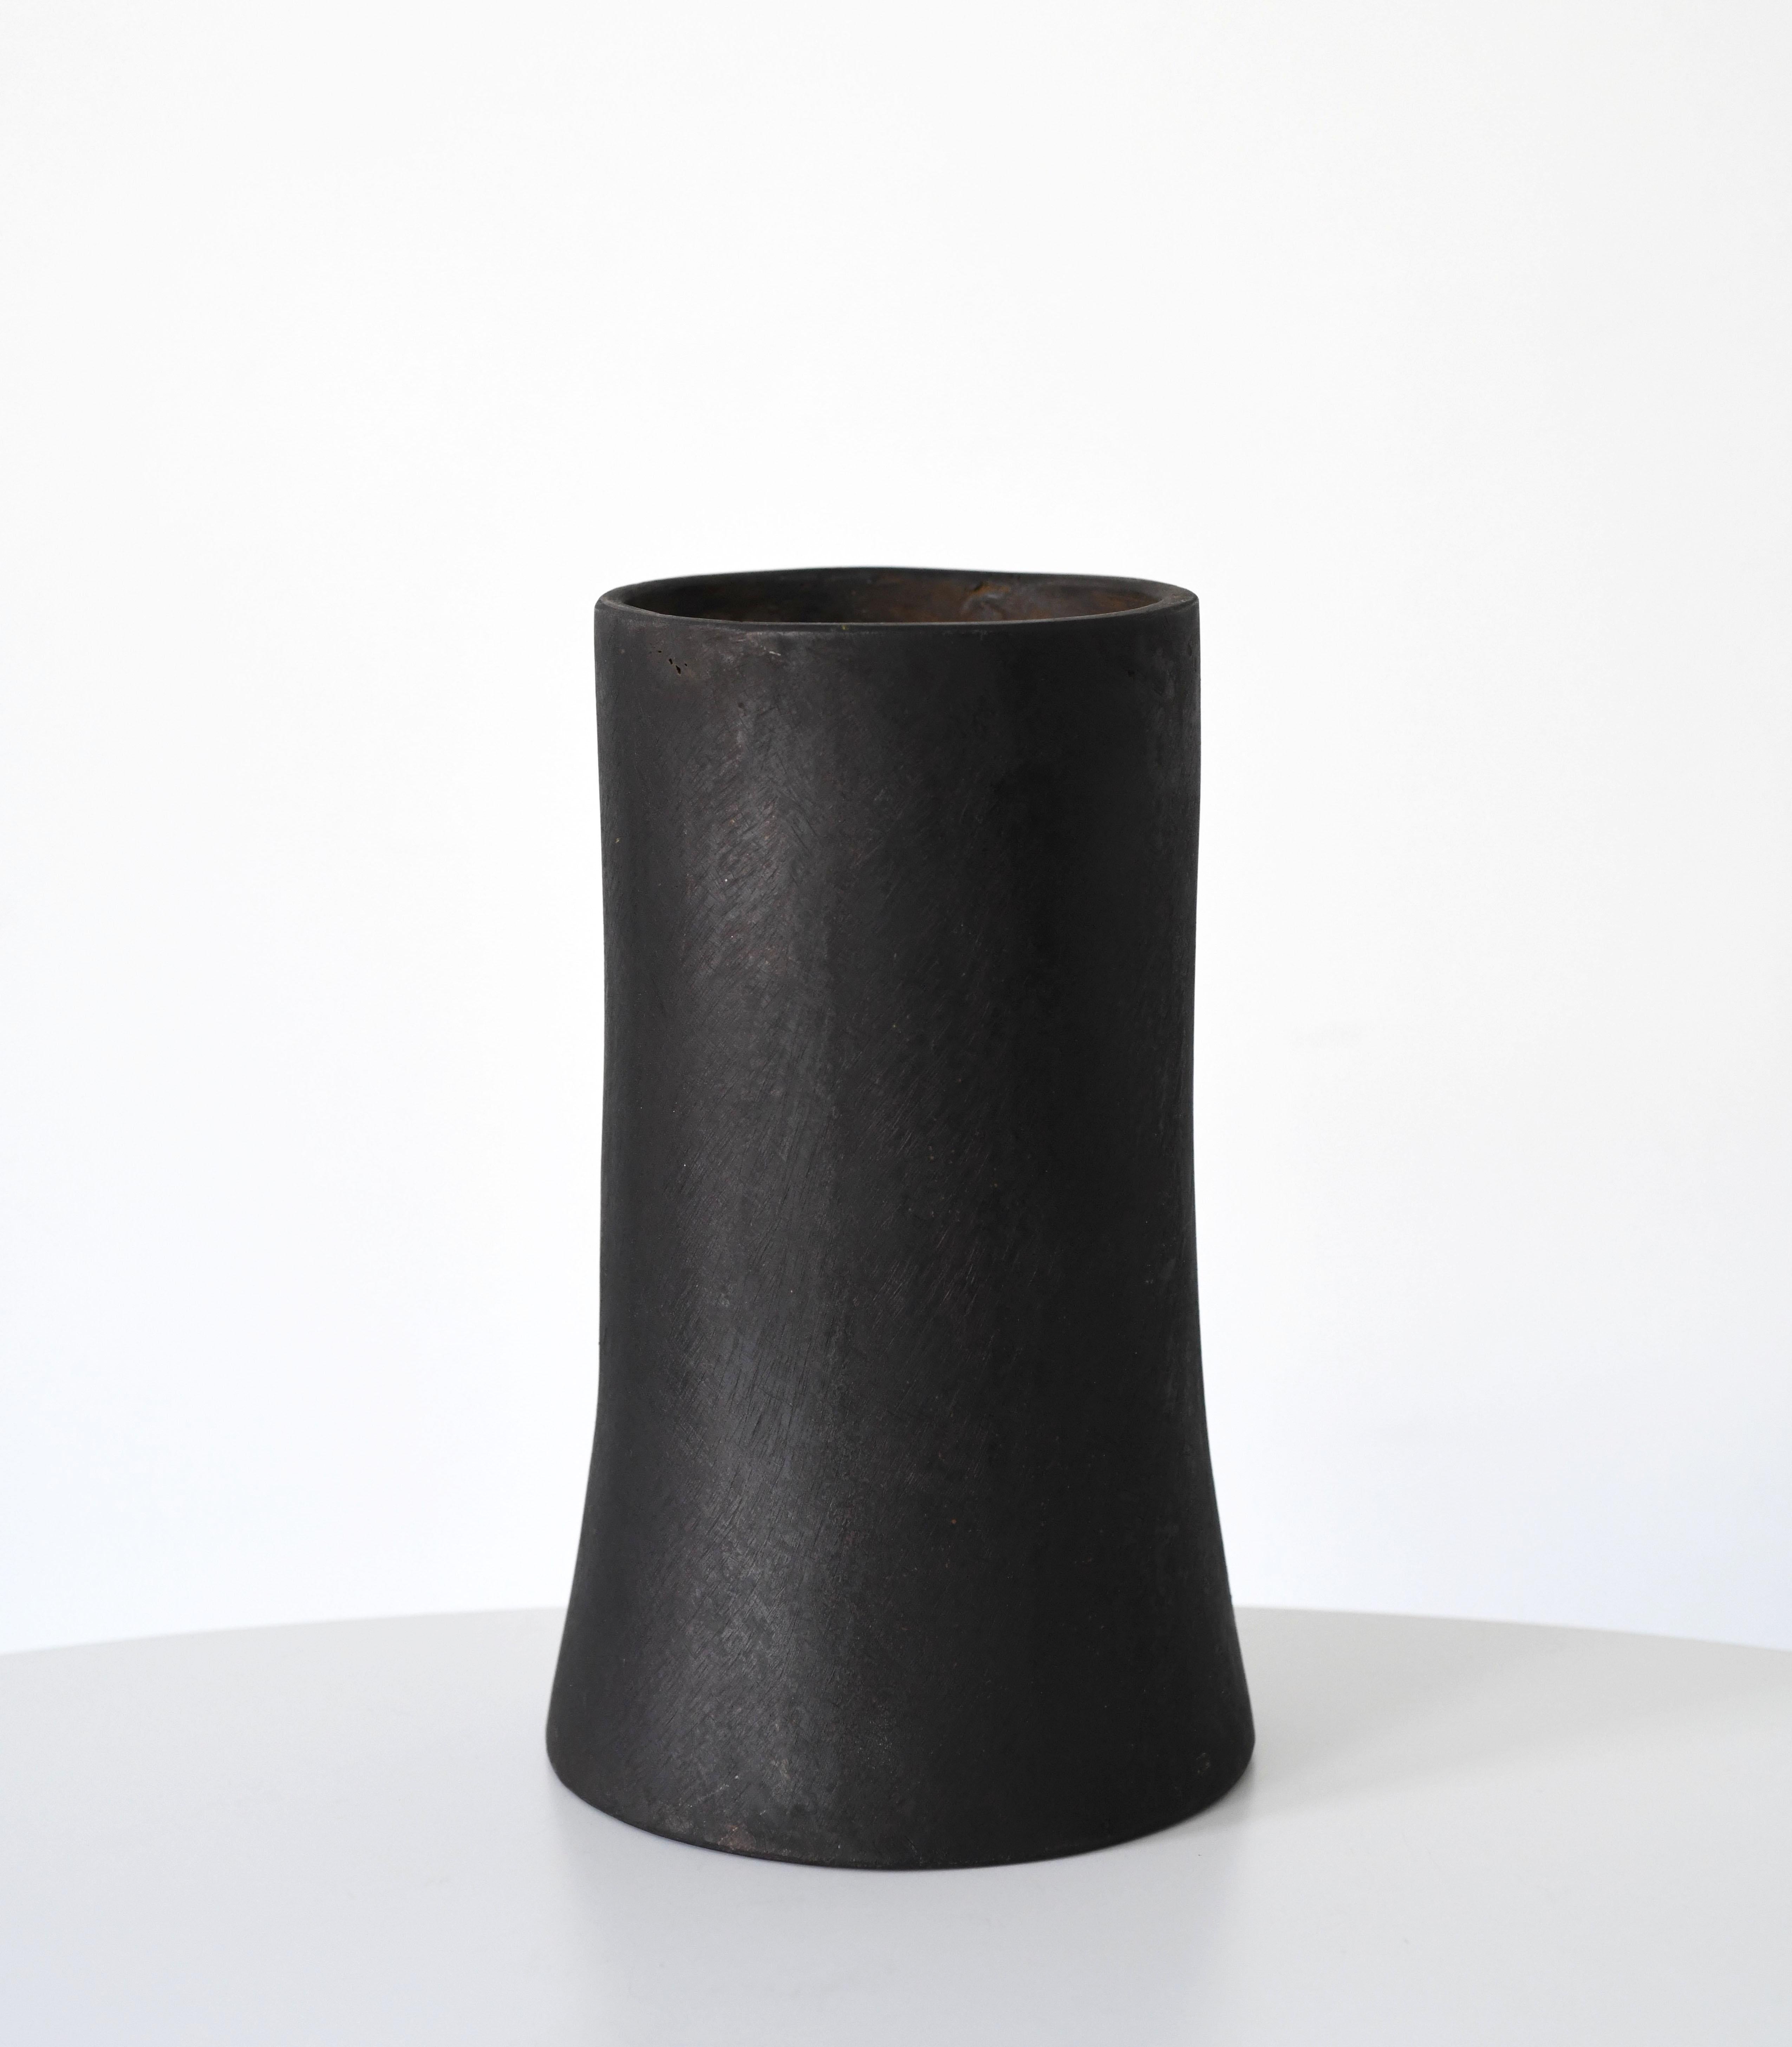 Eindrucksvolle Atom-Vase aus massivem Messing von Carl Auböck. Unterzeichnet von dem Unterzeichner. 